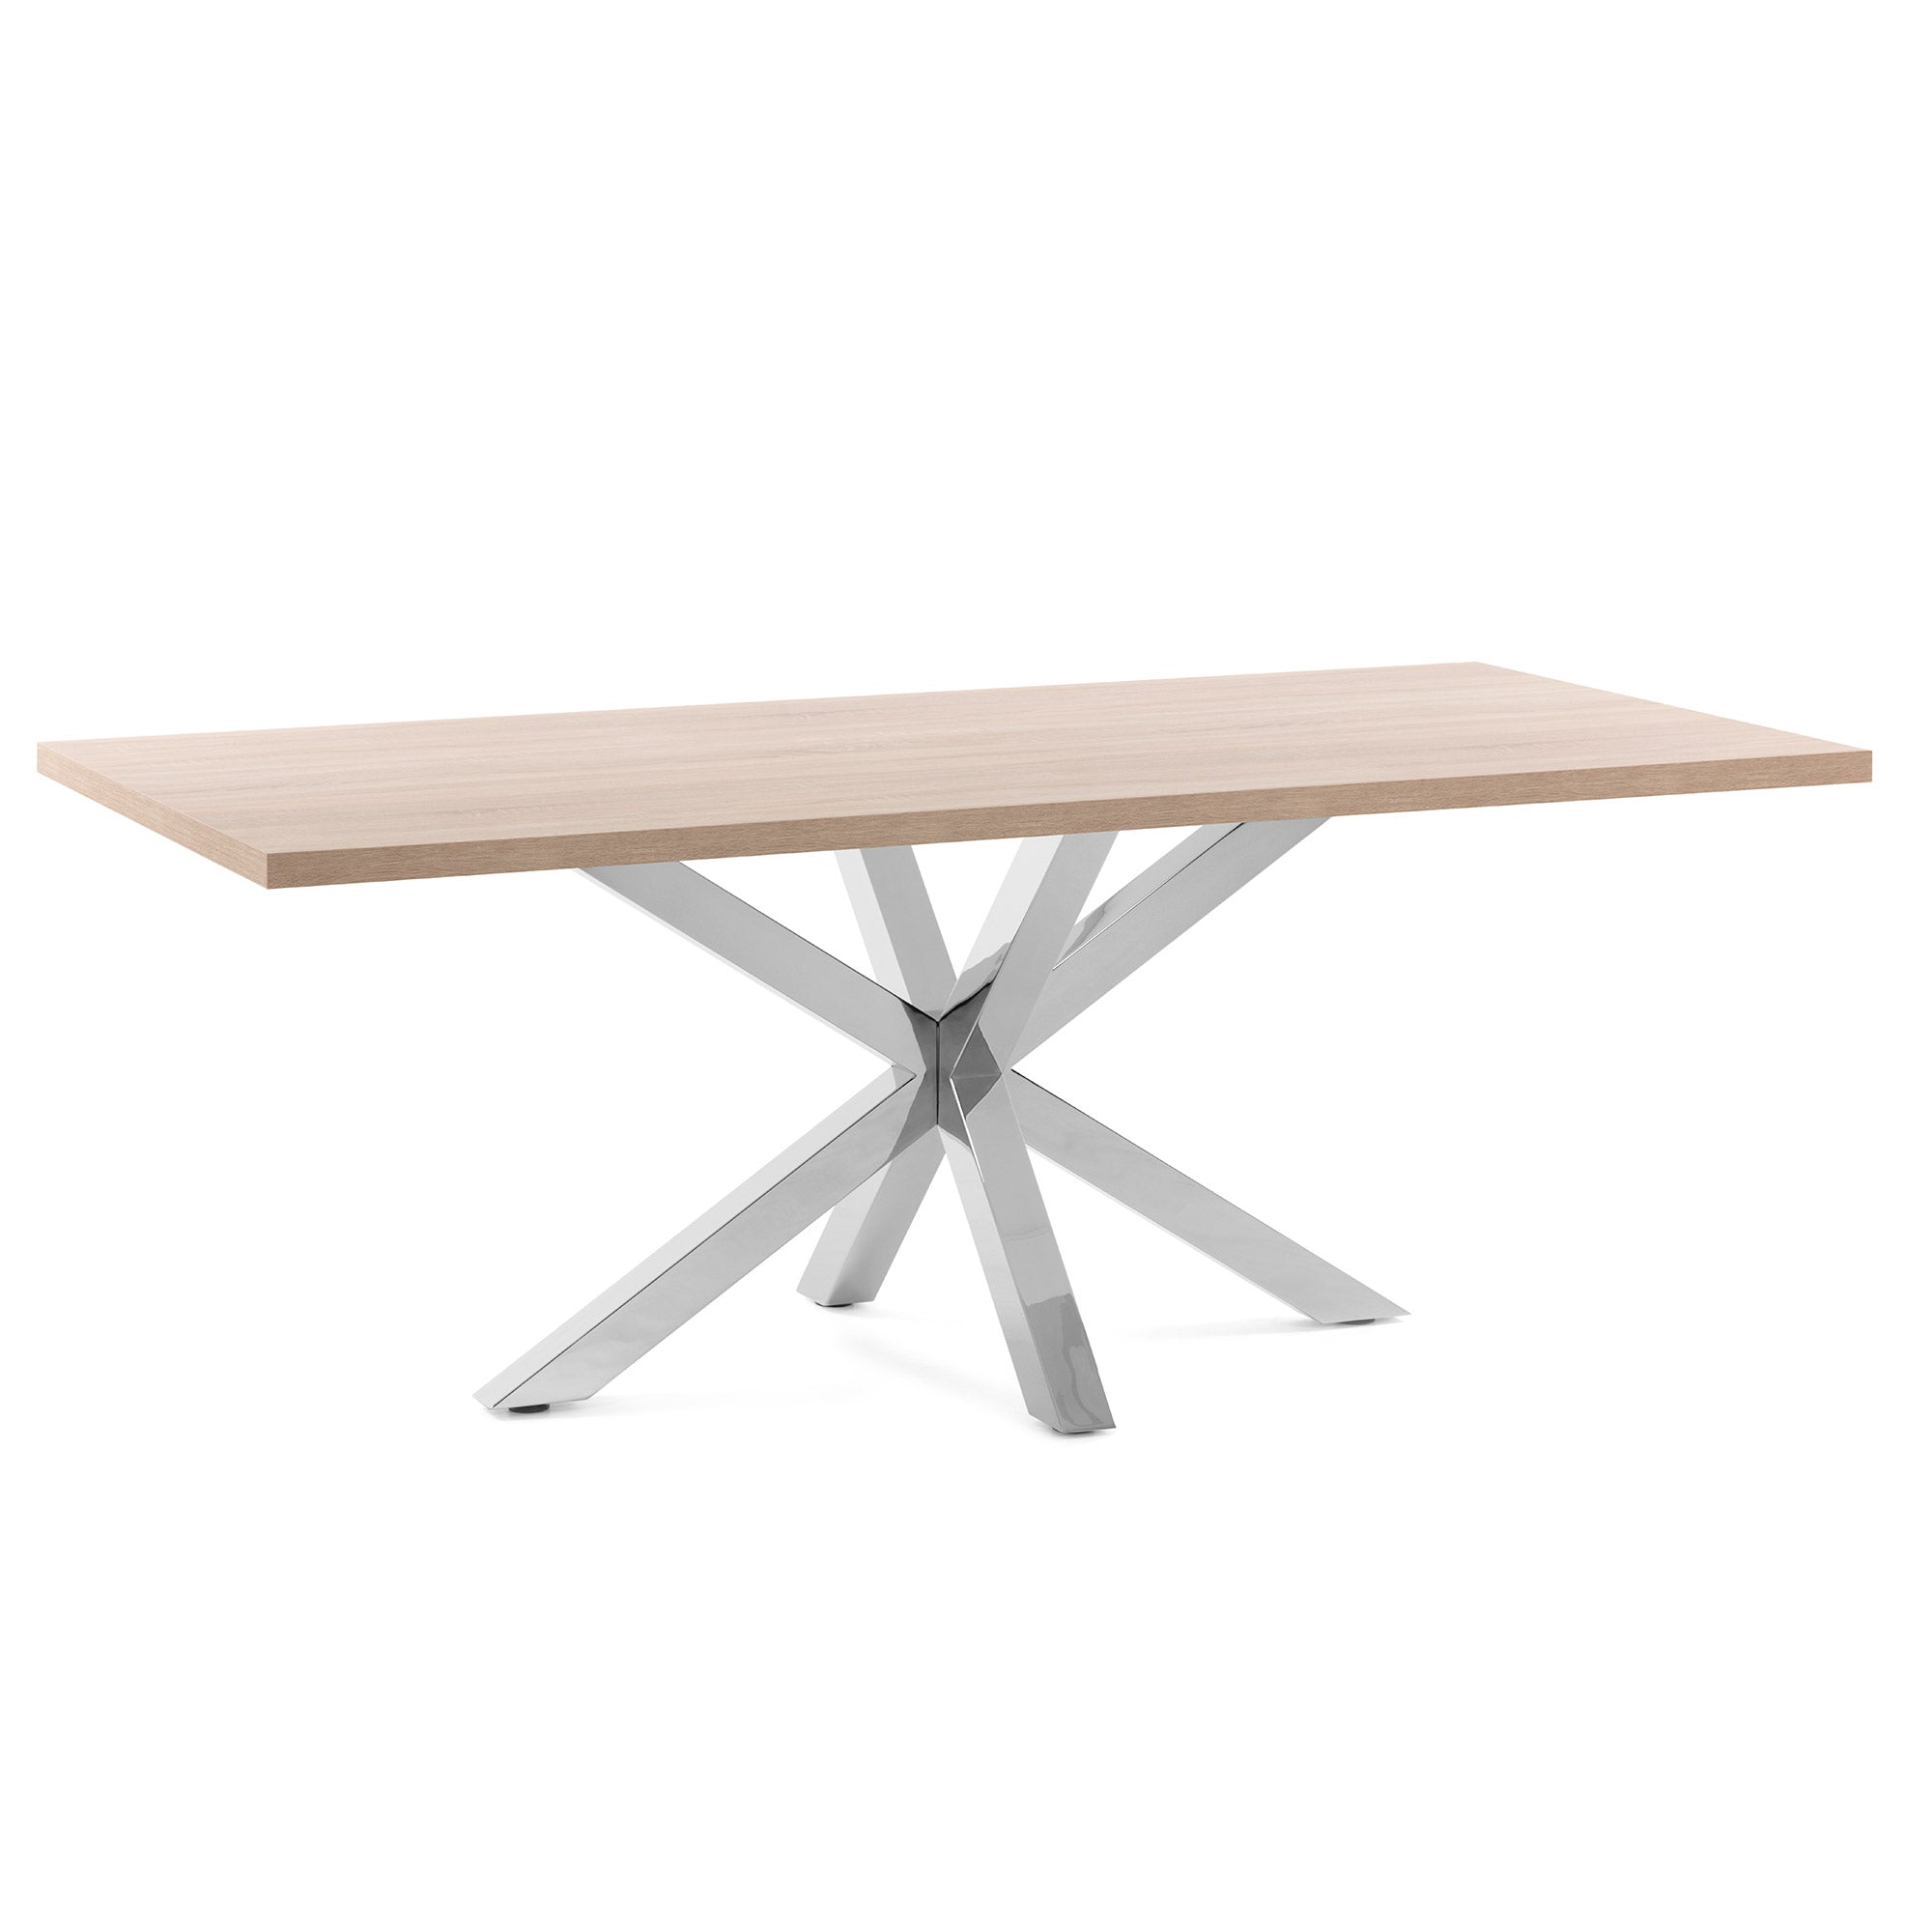 Argo table 180 cm natural melamine stainless steel legs